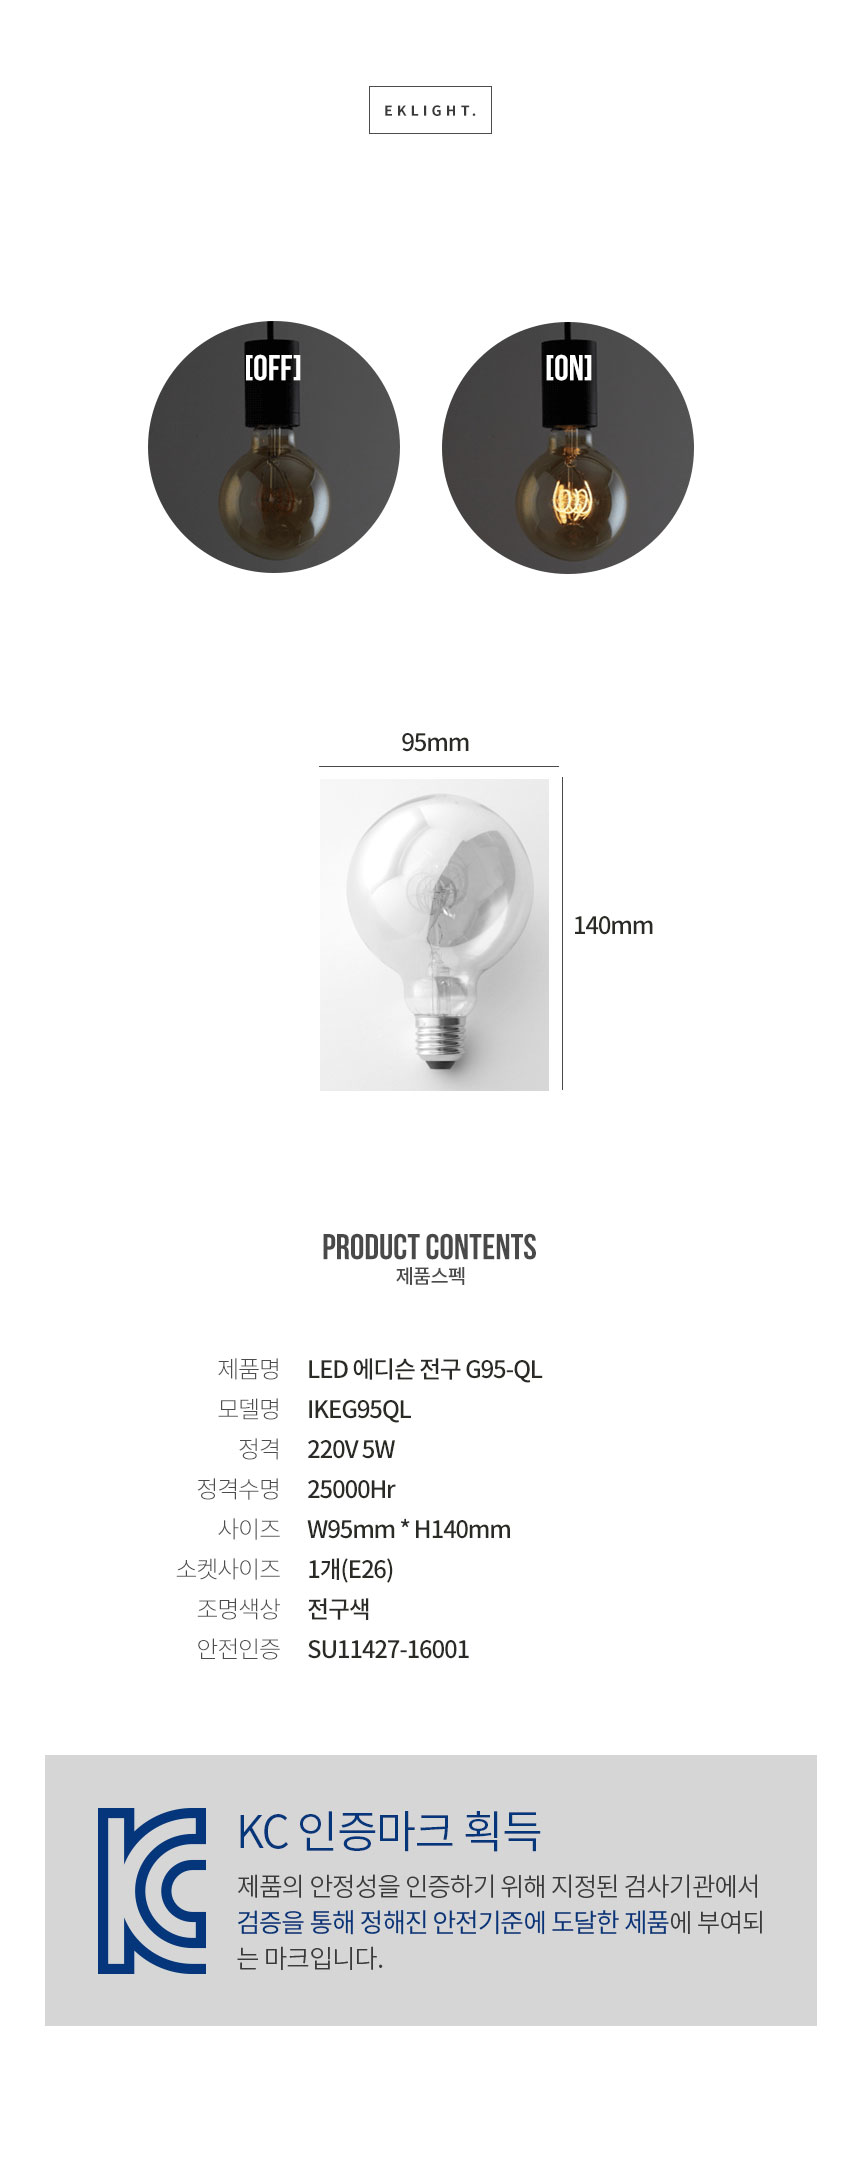 제품스펙 제품명 LED 에디슨 전구 G95-QL빈티지 LED 모델명 IKEG95QL
 정격 220V 5W 정격수명 25000시간 사이즈 너비 95mm * 높이 140mm 조명색상 전구색 안전인증 SU11427-16001